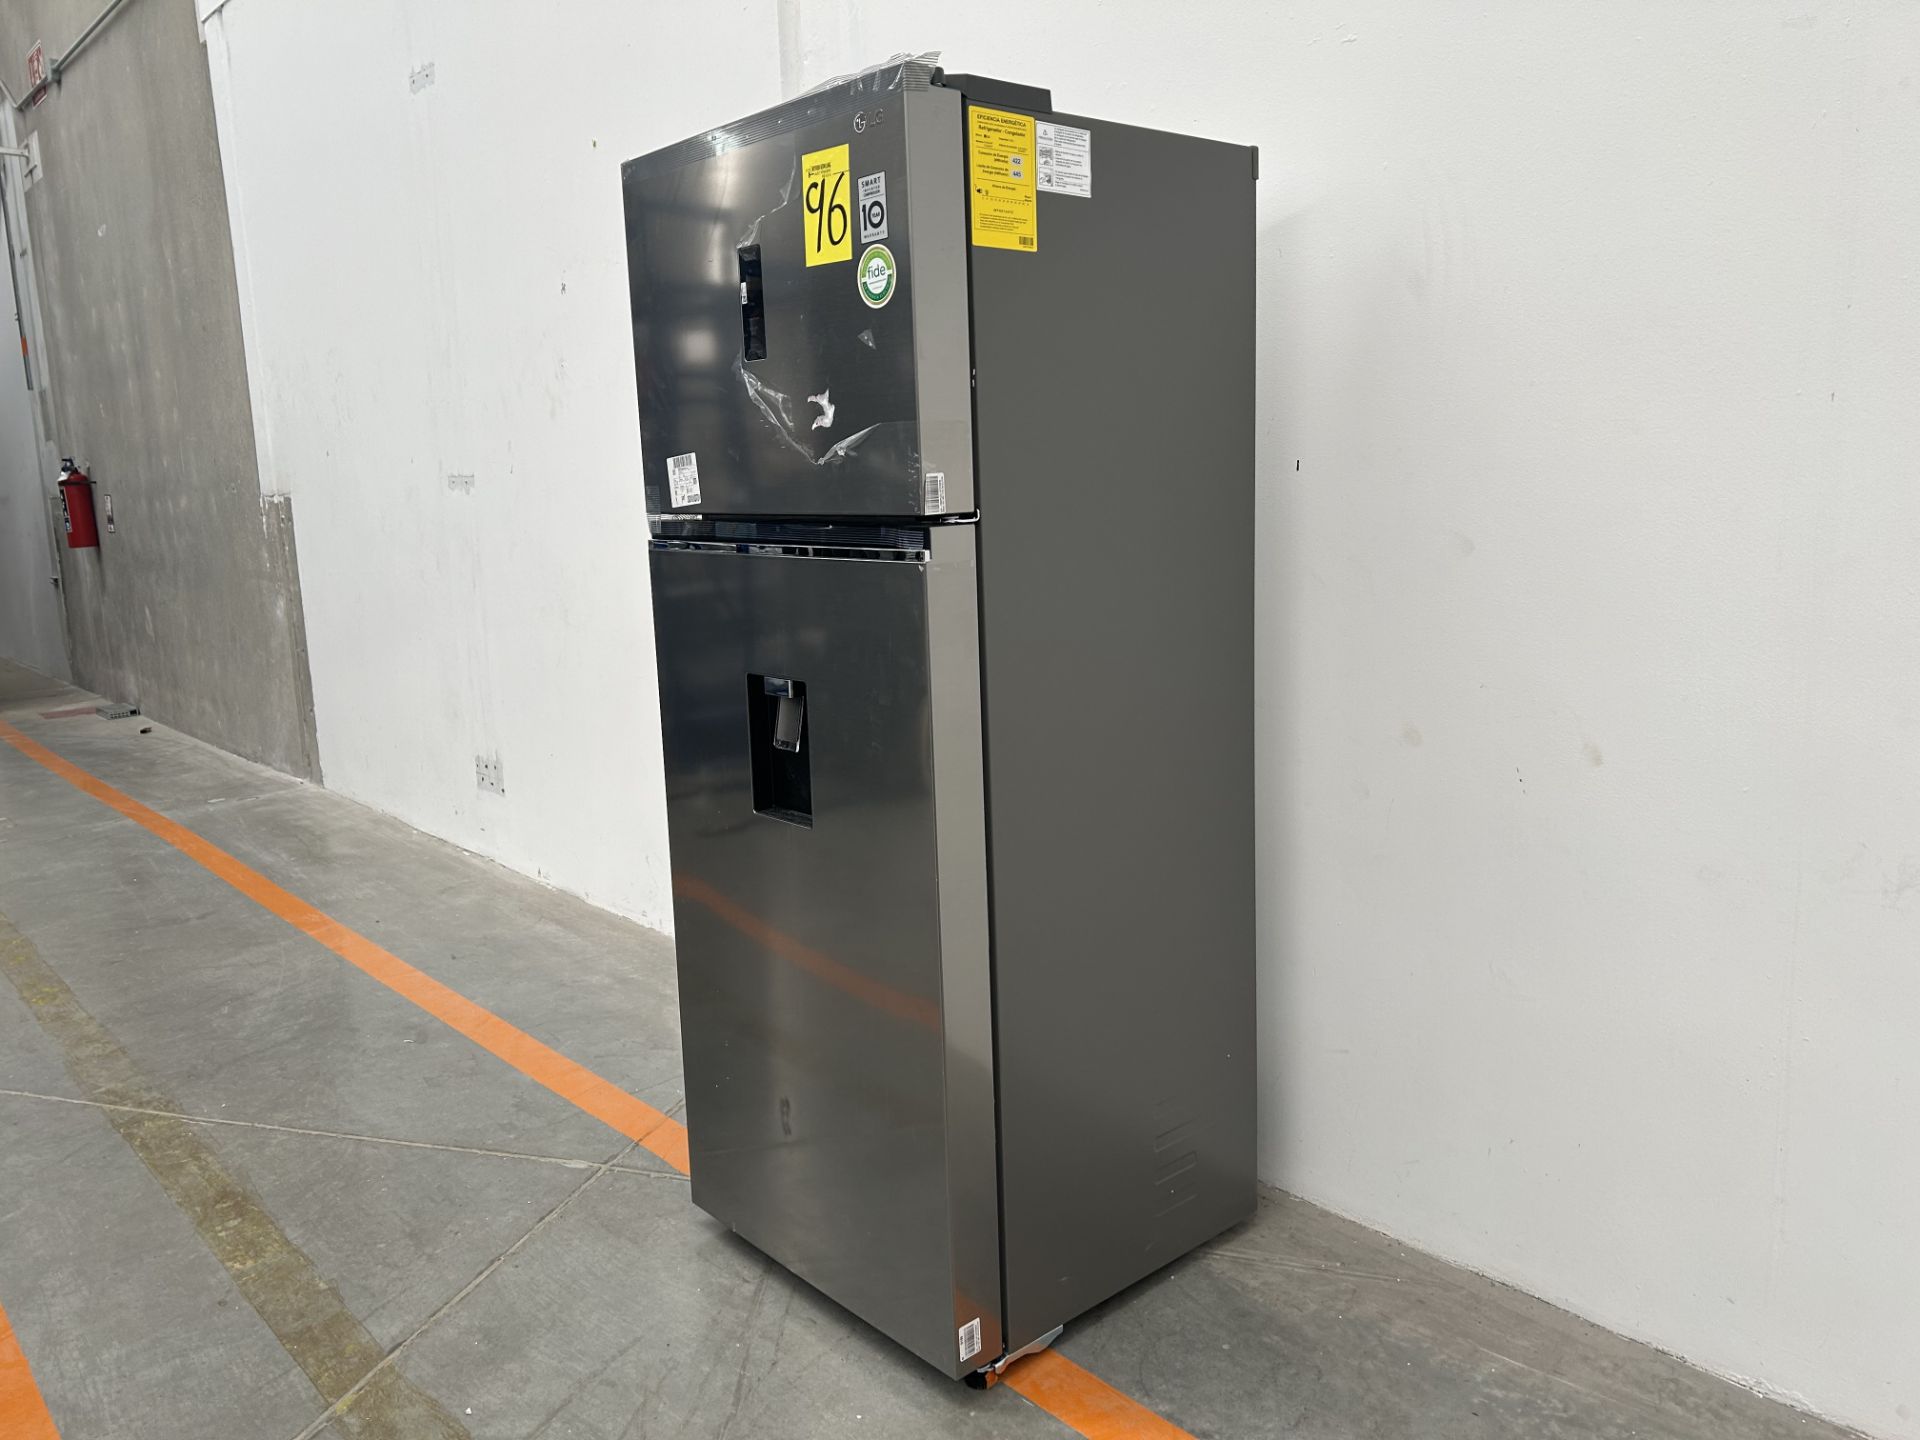 (NUEVO) Refrigerador con dispensador de agua Marca LG, Modelo VT40AWP, Serie L1S381, Color GRIS - Image 3 of 5